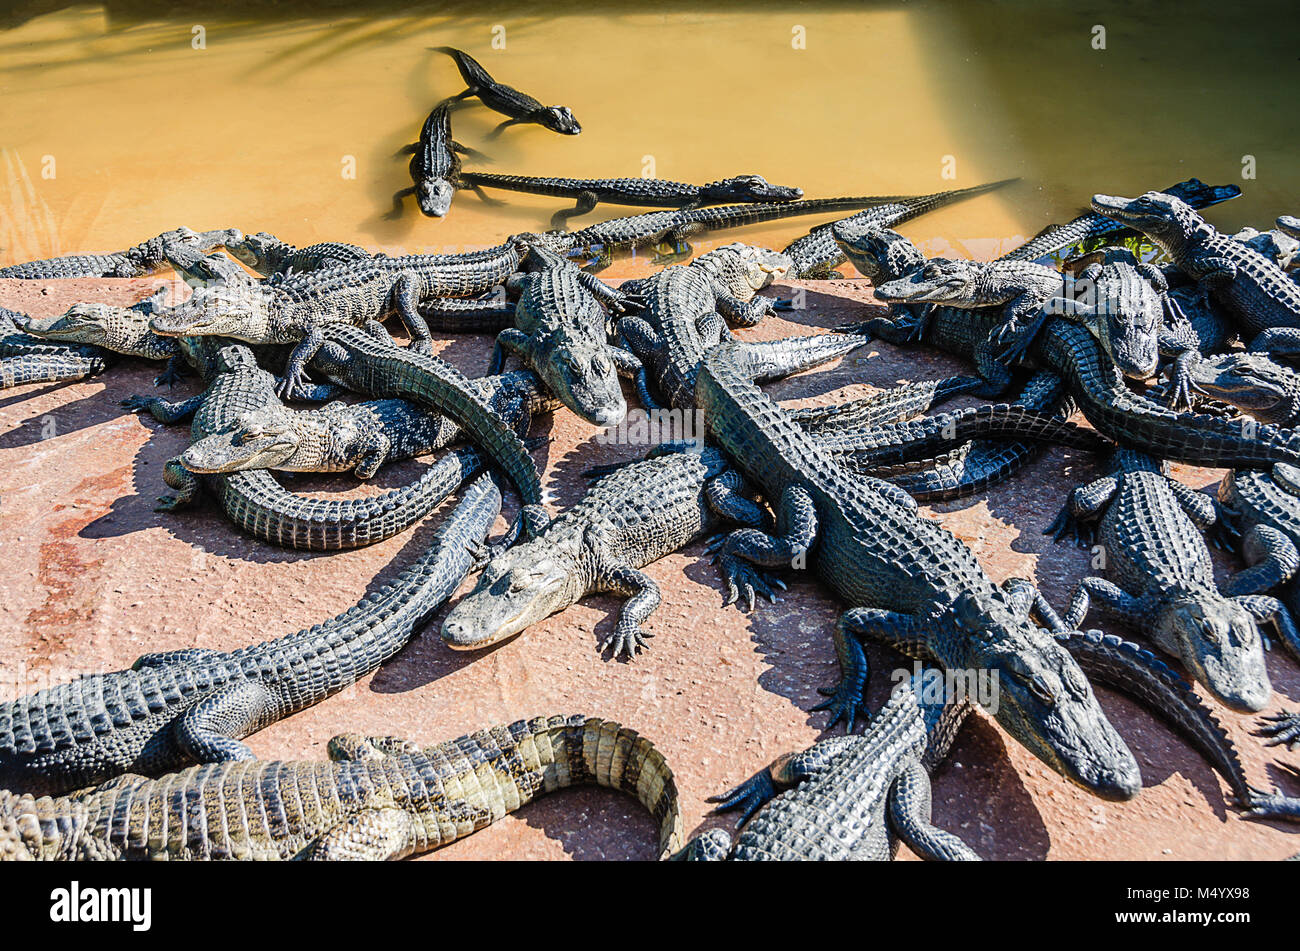 Groupe d'alligators qui sortent d'extérieure à l'Everglades Alligator Farm dans le sud de la Floride. Banque D'Images